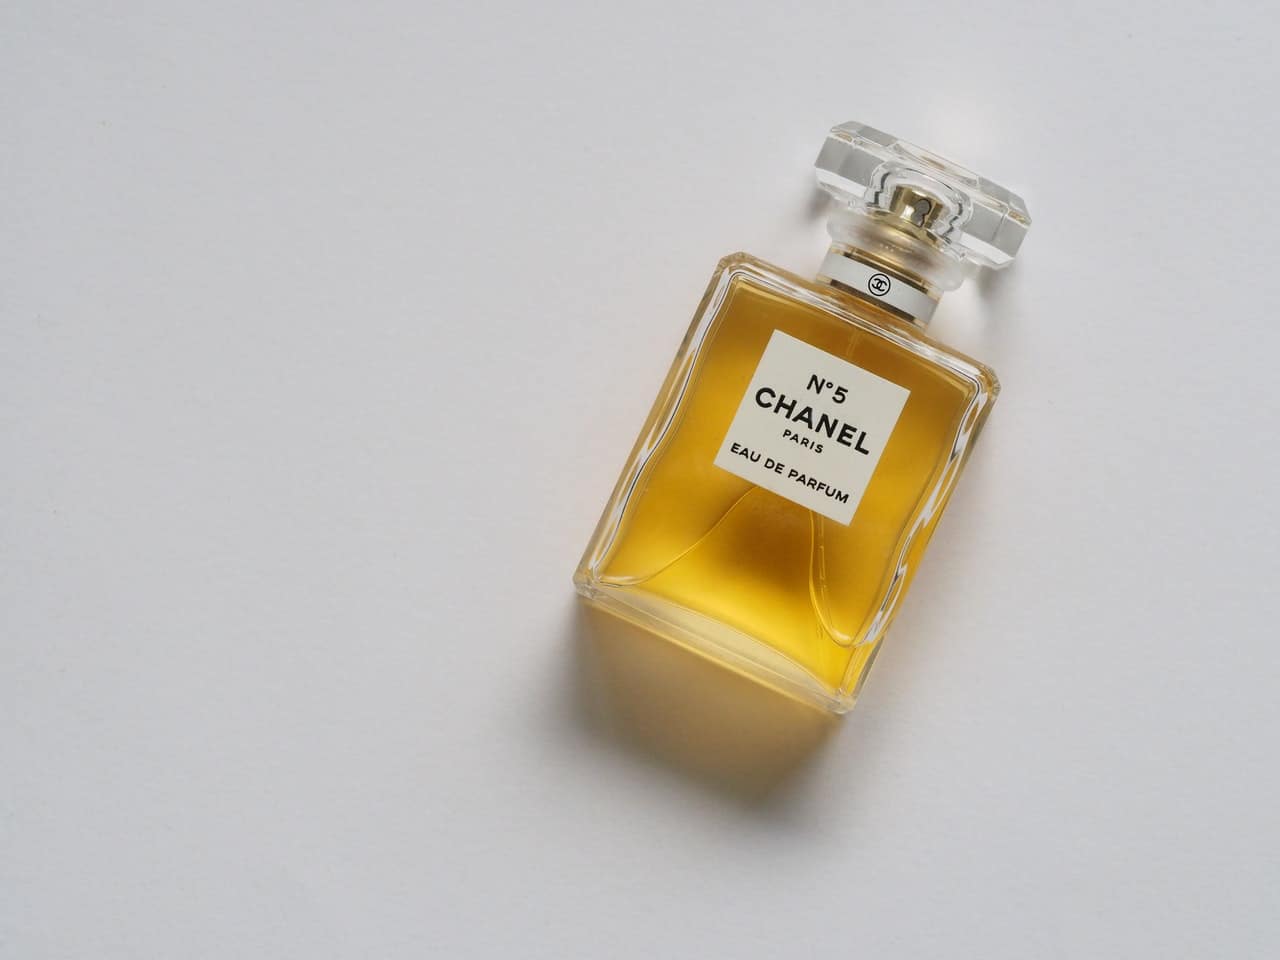 N5 Parfum  1 FL OZ  Fragrance  CHANEL